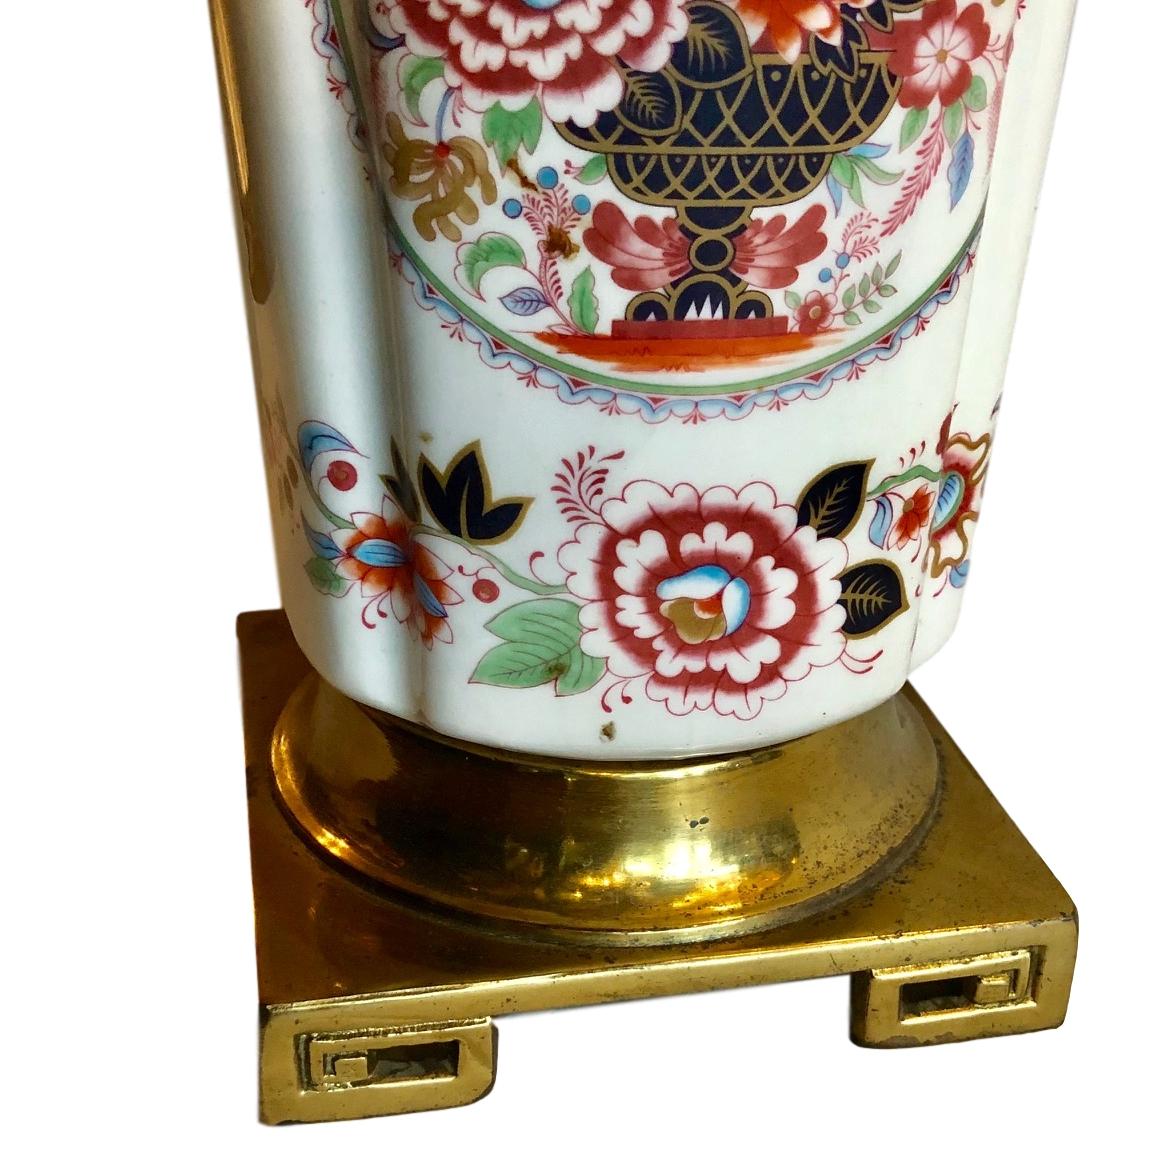 Paire de lampes de table en porcelaine de chinoiserie française des années 1940, avec décoration florale sur le corps et bases en bronze.

Mesures :
Hauteur du corps : 18 ?